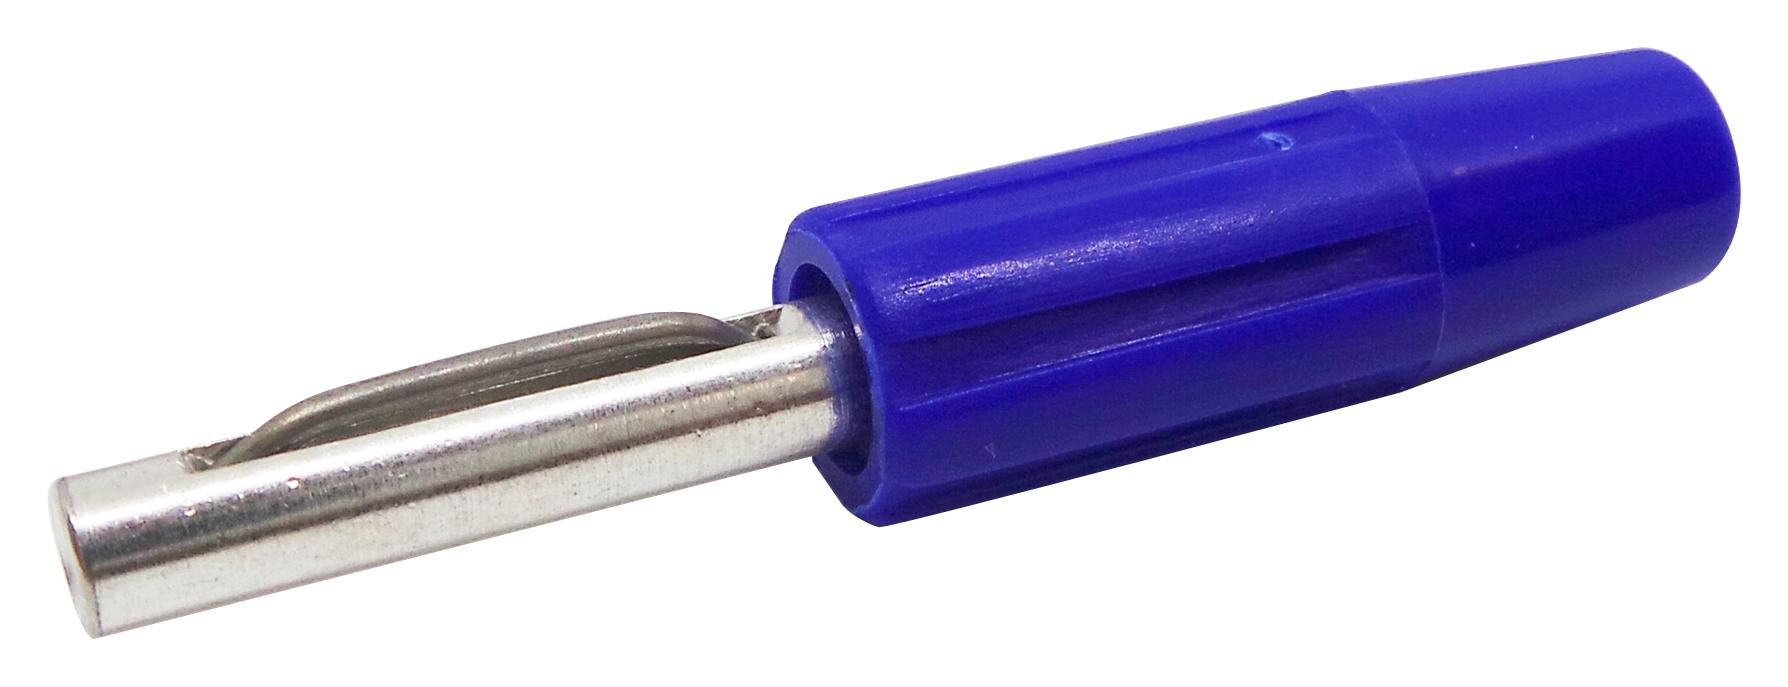 Deltron Components 550-0200-01 Plug, 4mm, Blue